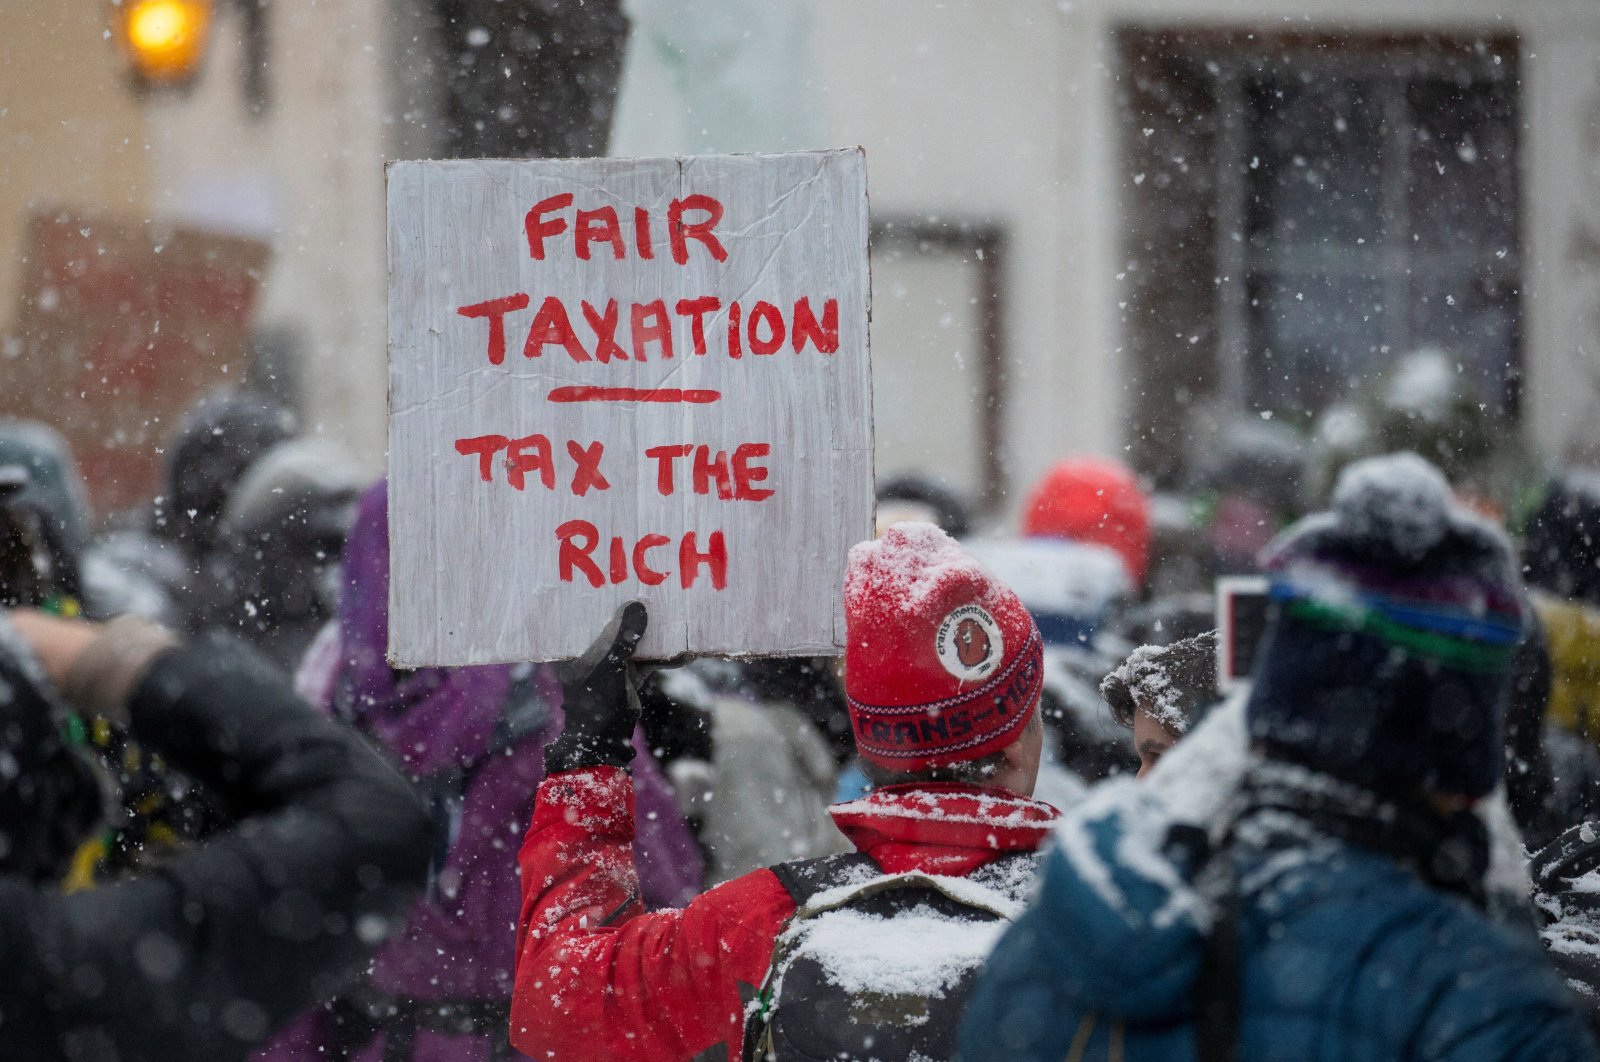 Kebijakan ‘Billionaire busting’ mendesak saat para elit masuk ke Davos